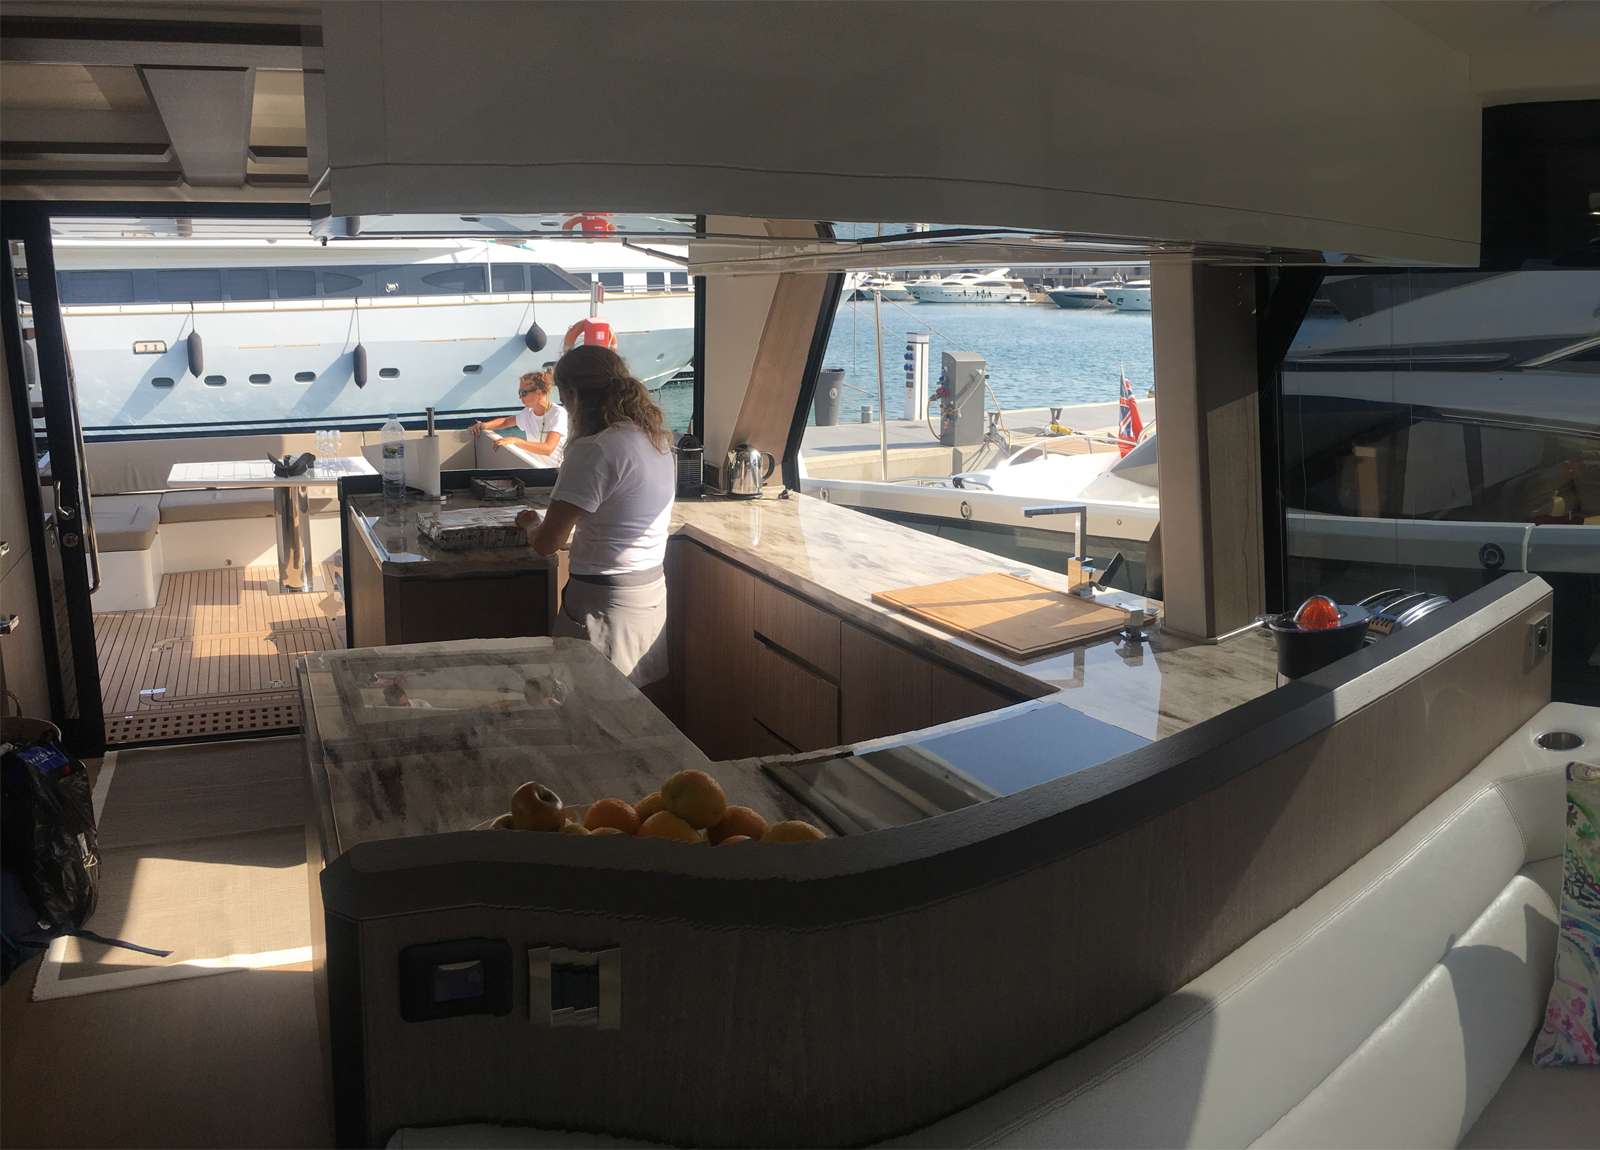 kitchen luxury yacht galeon 640 fly habana iv balearic islands